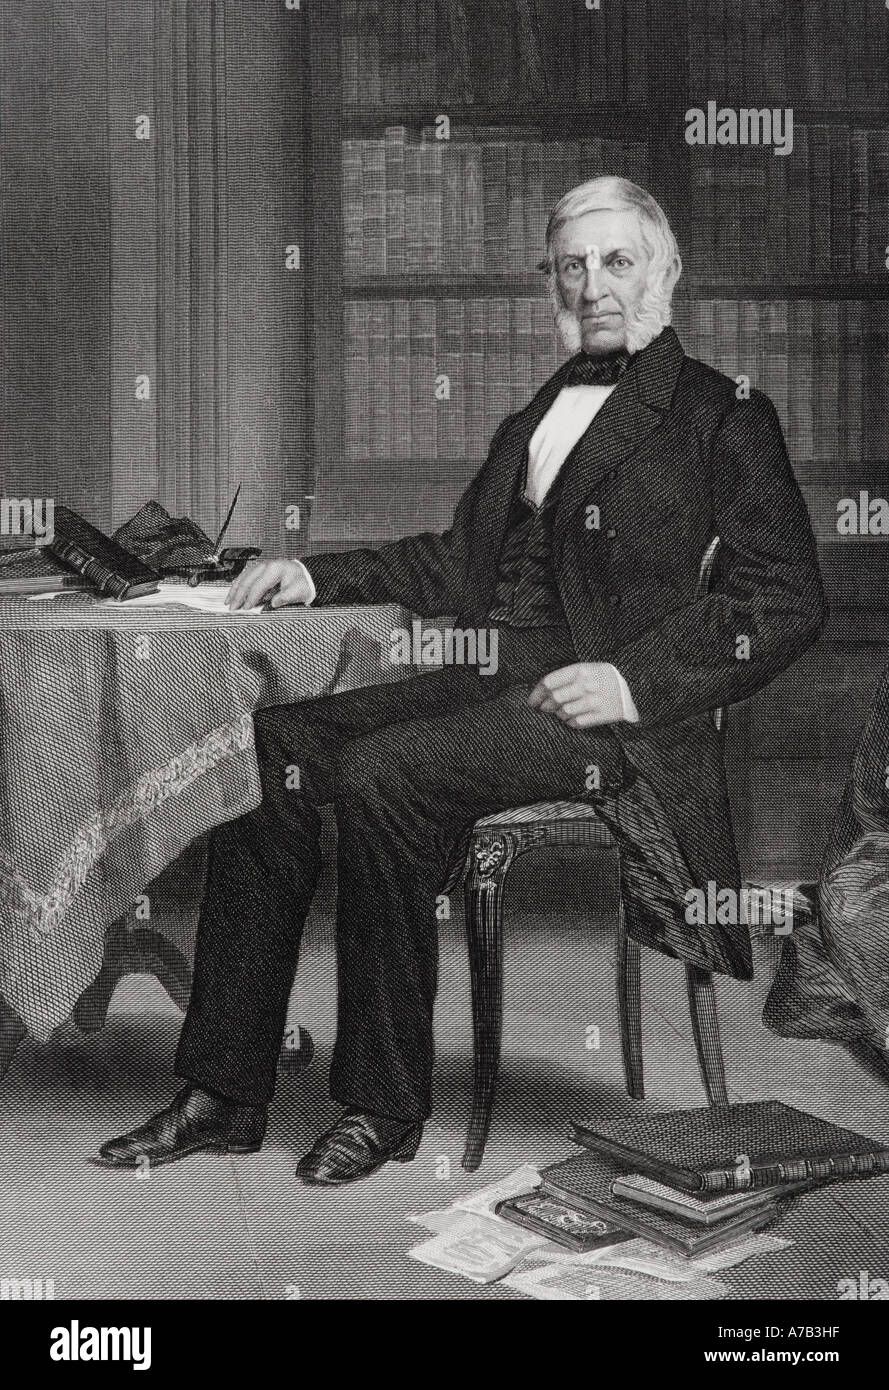 George Bancroft, 1800 - 1891. Der amerikanische Historiker als Vater der amerikanischen Geschichte bekannt. Aus einem Gemälde von Alonzo Chappel. Stockfoto